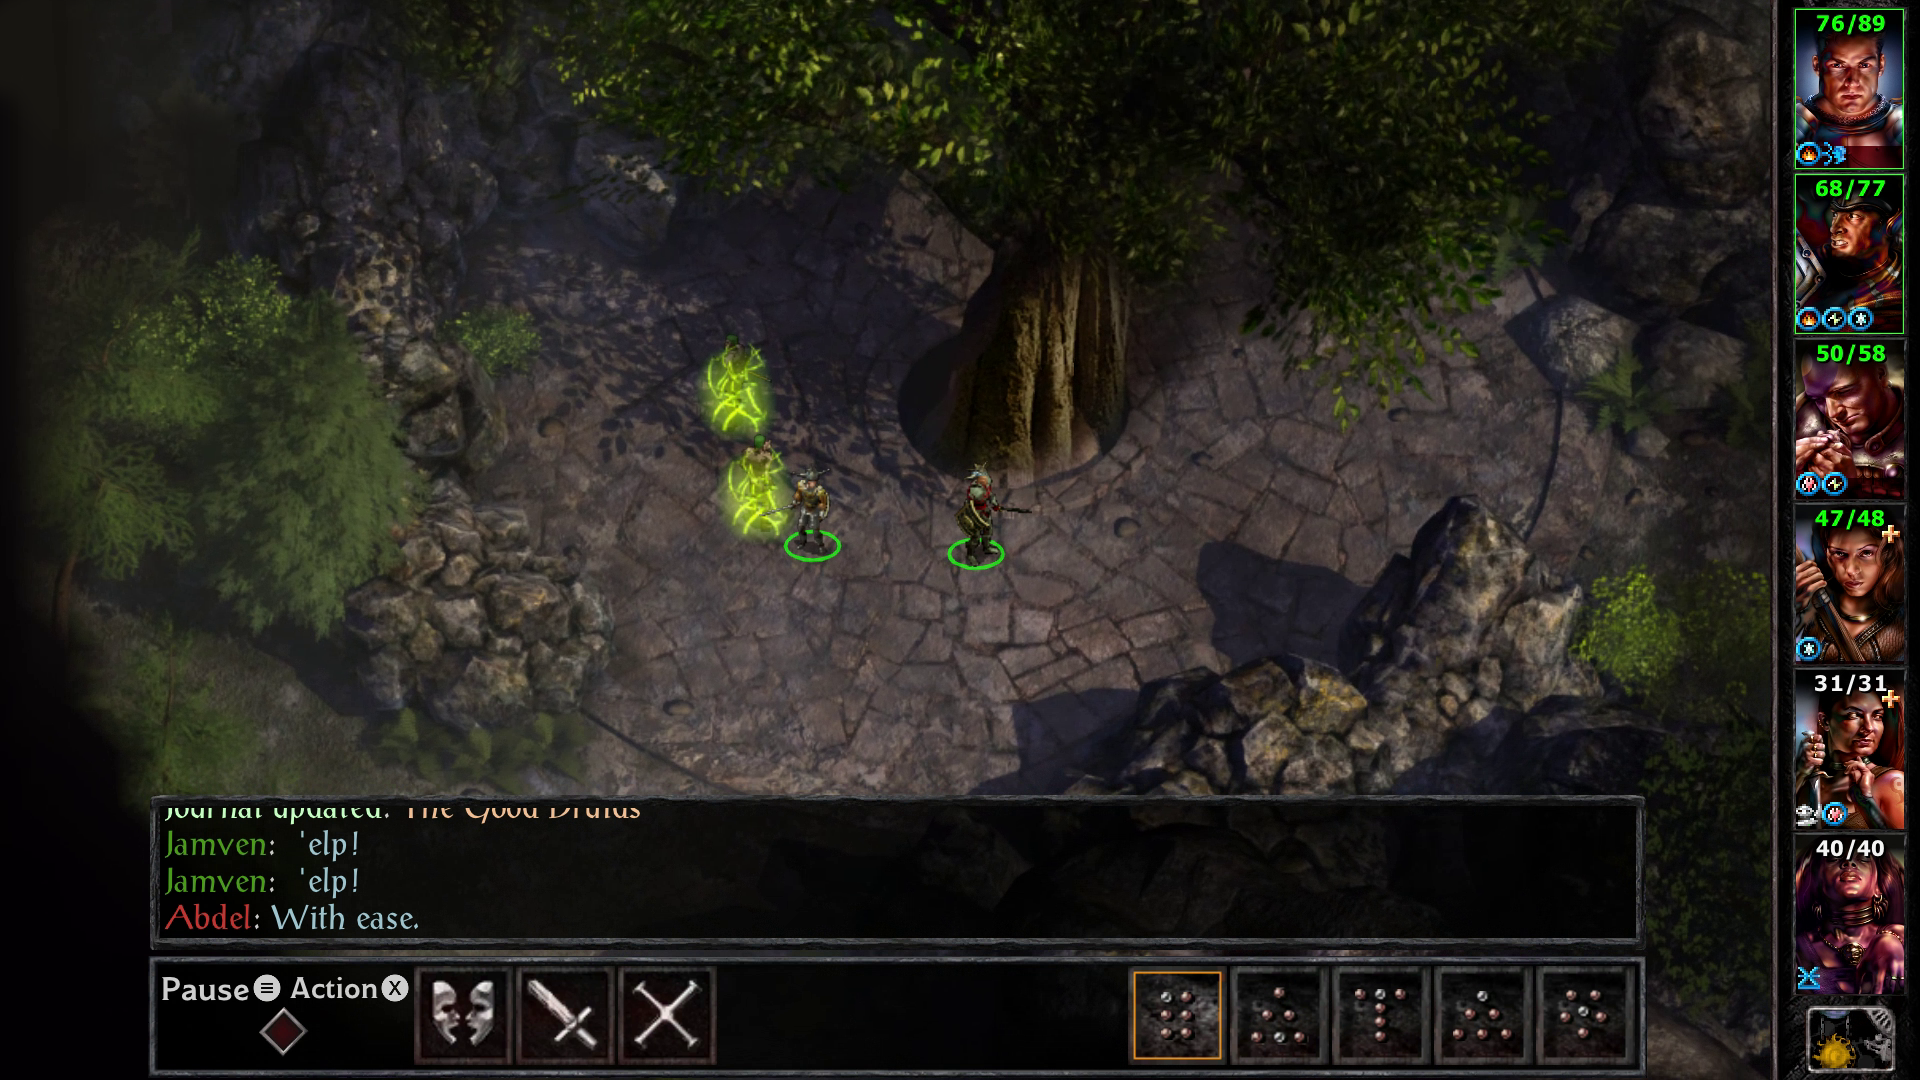 Siege of Dragonspear est une toute nouvelle extension pour Baldur's Gate II, créée exclusivement pour cette collection.